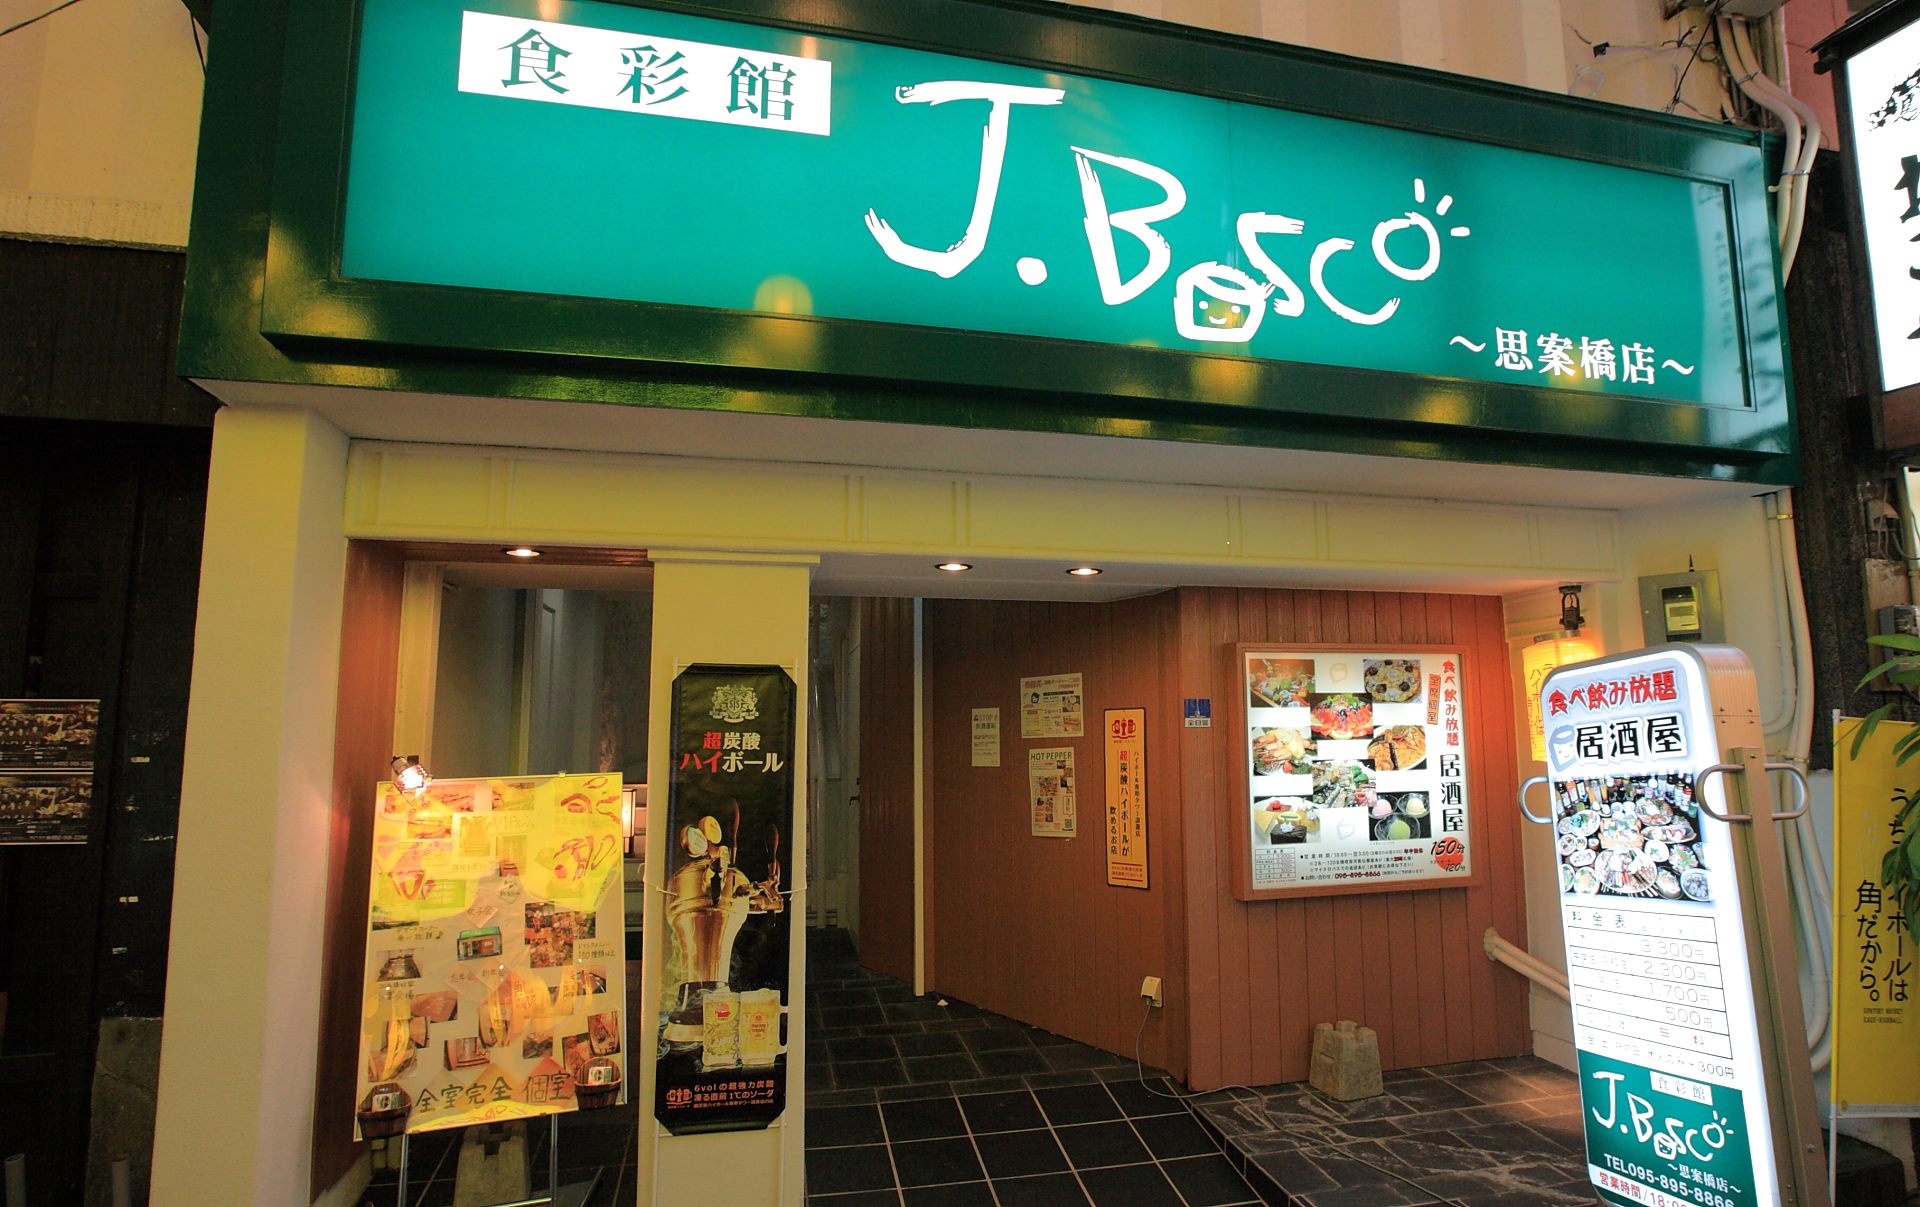 食彩館 J.BOSCO 思案橋店